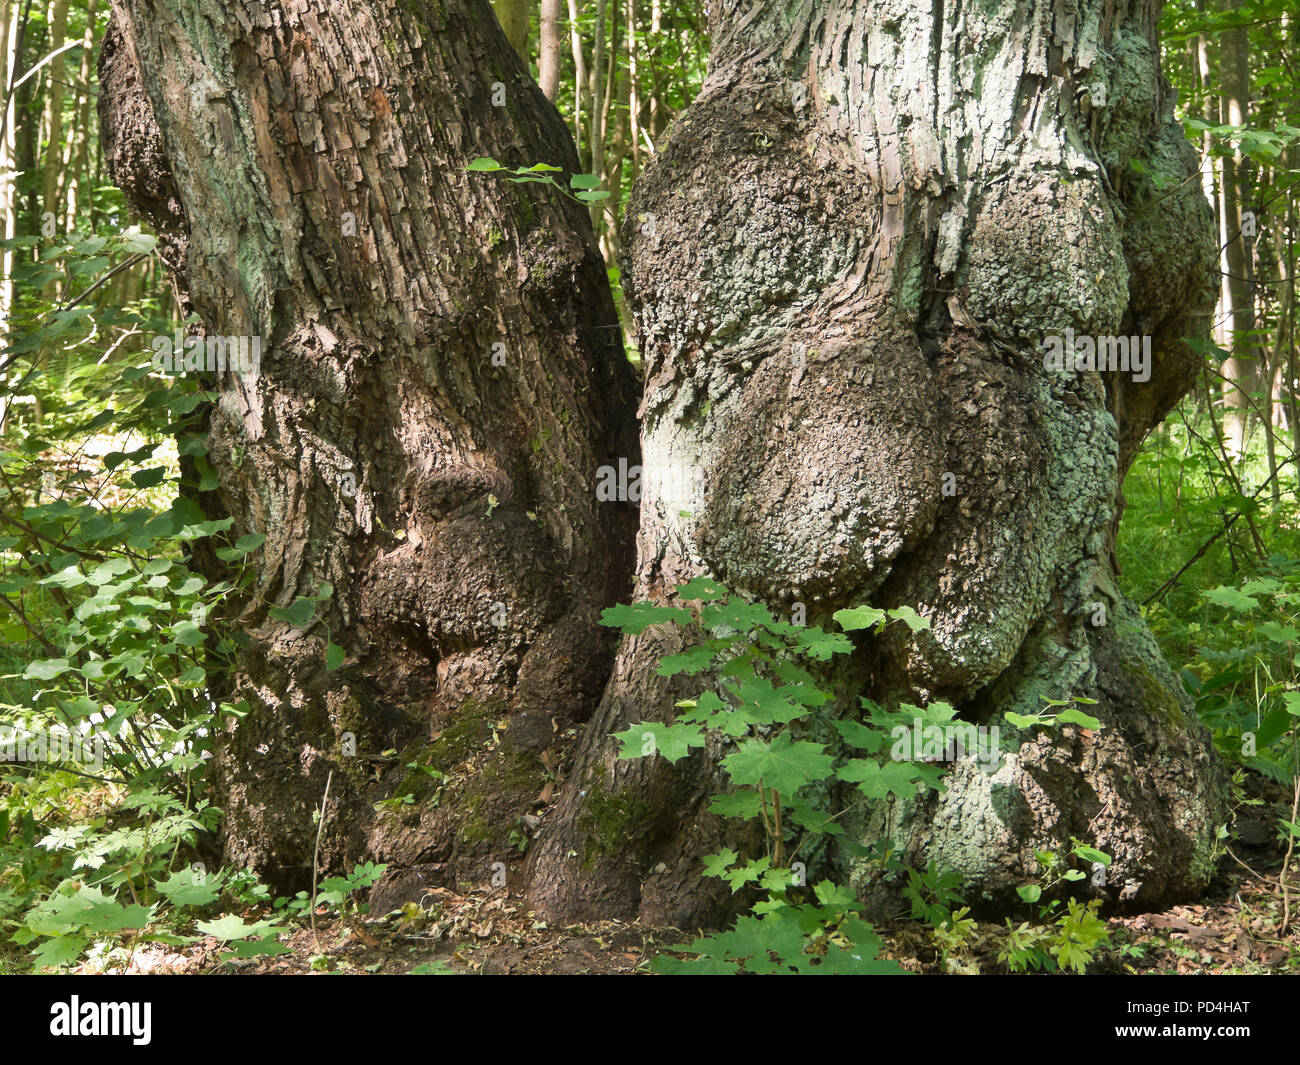 Dos viejos amigos de árbol en el bosque cercano, conjuntamente, como las pruebas de necesidades económicas en un hobbit historia, Oslo Noruega Foto de stock